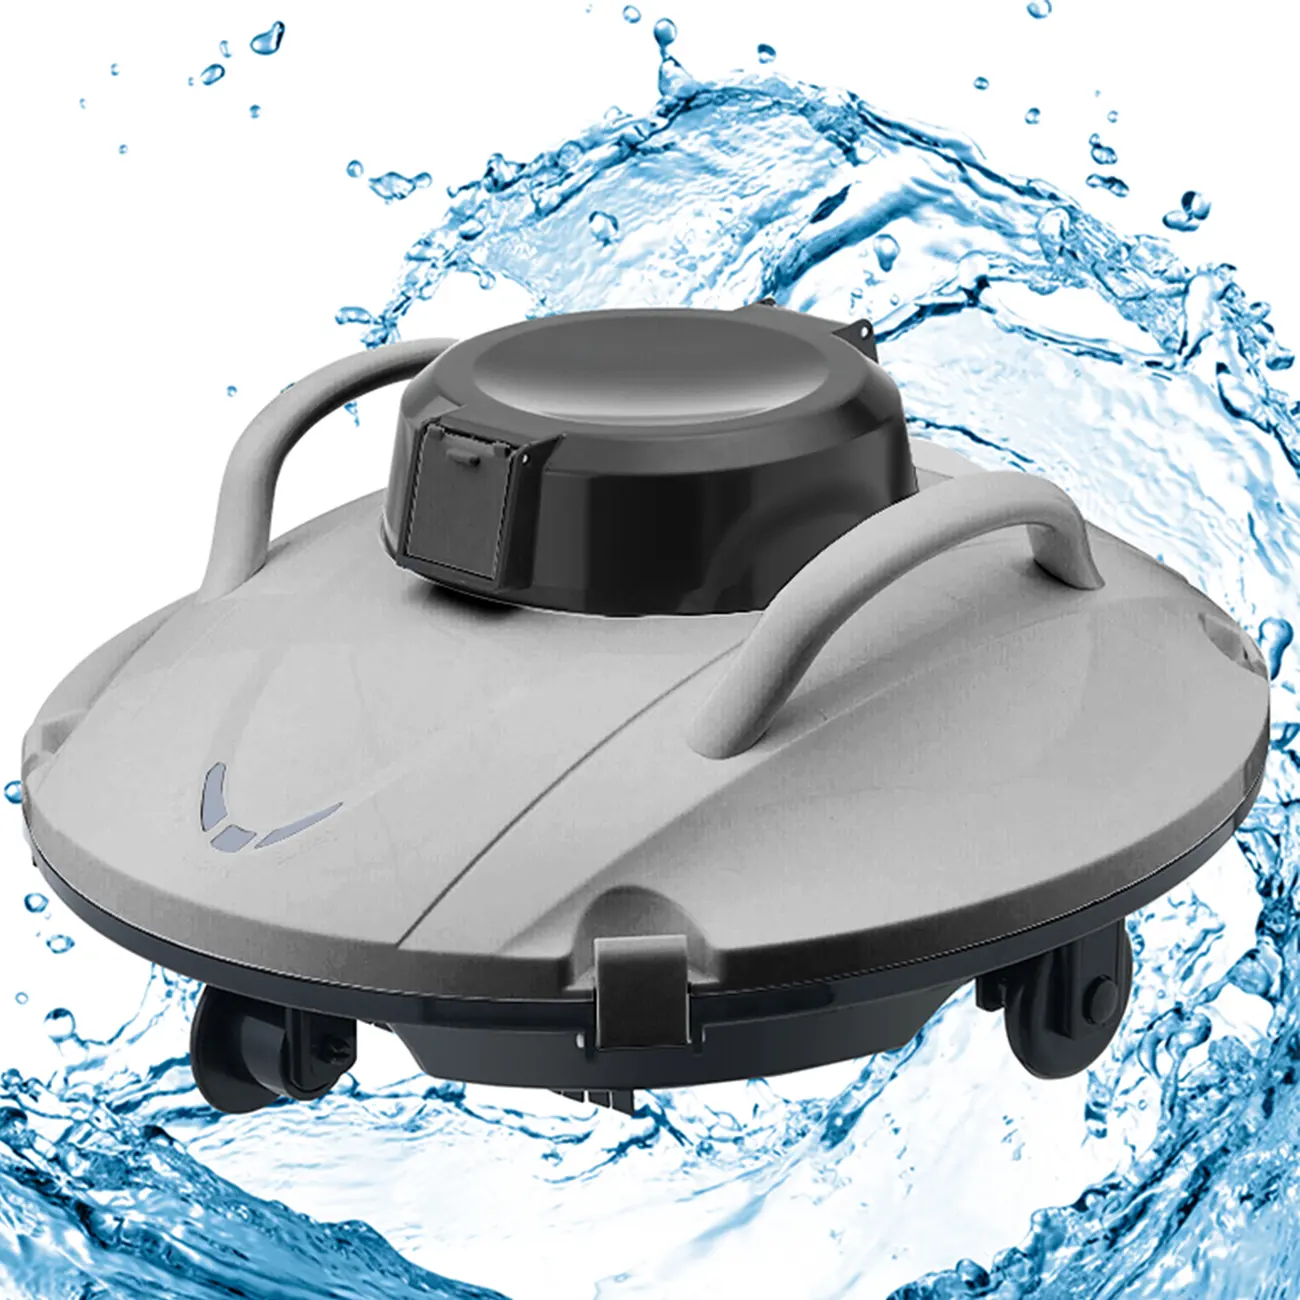 Poolreinigungsroboter Schwimmbadreinigung Roboter automatischer schnurloser Poolreiniger Roboter Picine aspirateur parois et fond